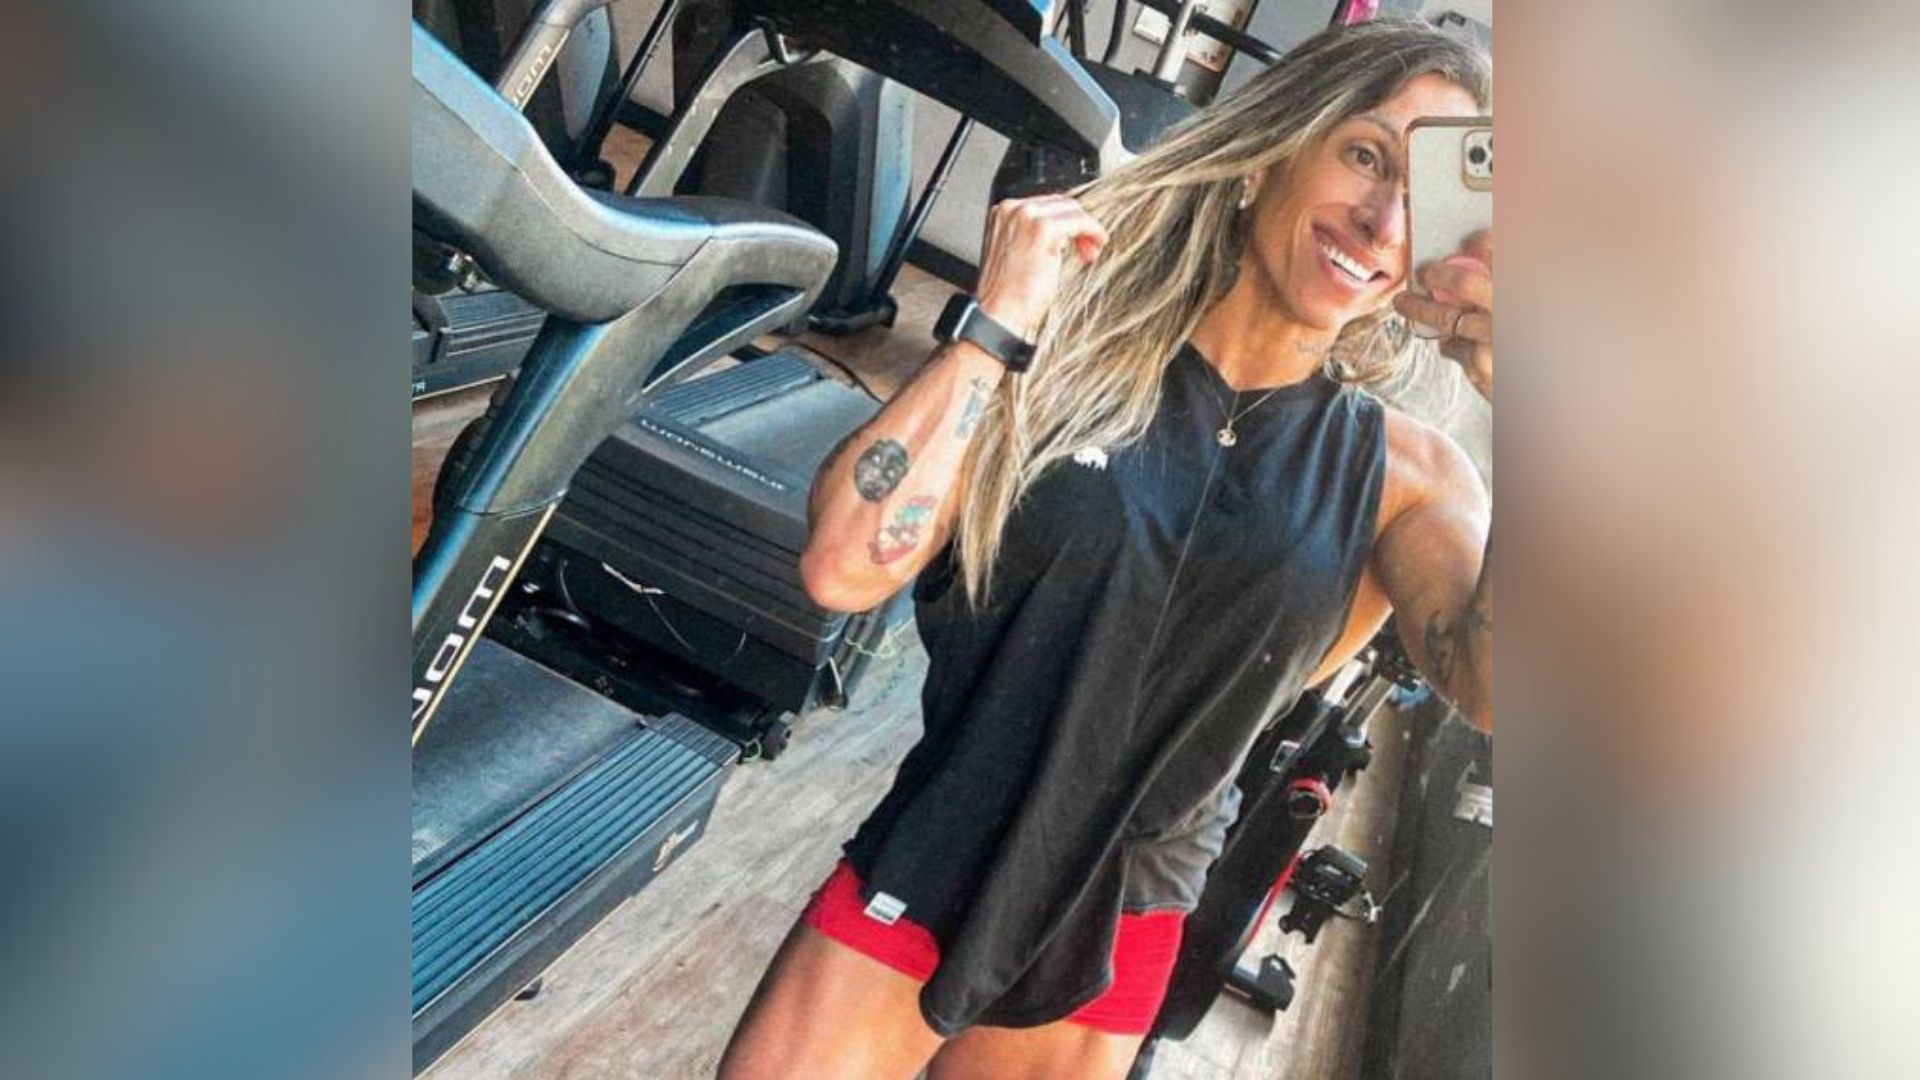 Con más de 24 mil seguidores en Instagram, Cintia Goldoni compartía su pasión por el ejercicio y motivaba a muchos con sus rutinas de entrenamiento y estilo de vida saludable en redes sociales.